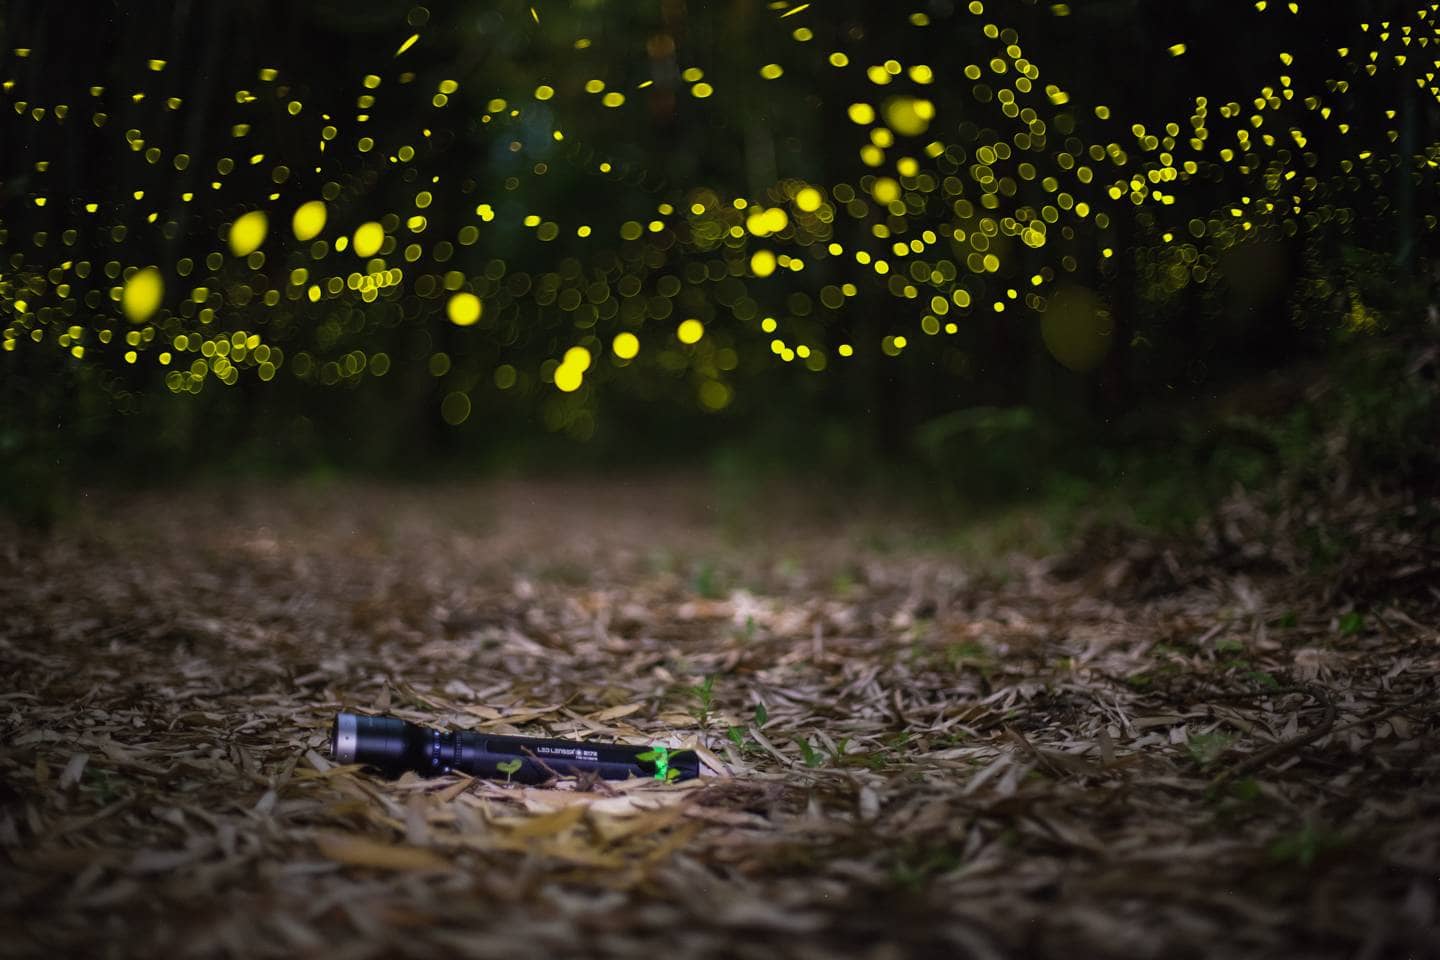 LED Lenser fireflies